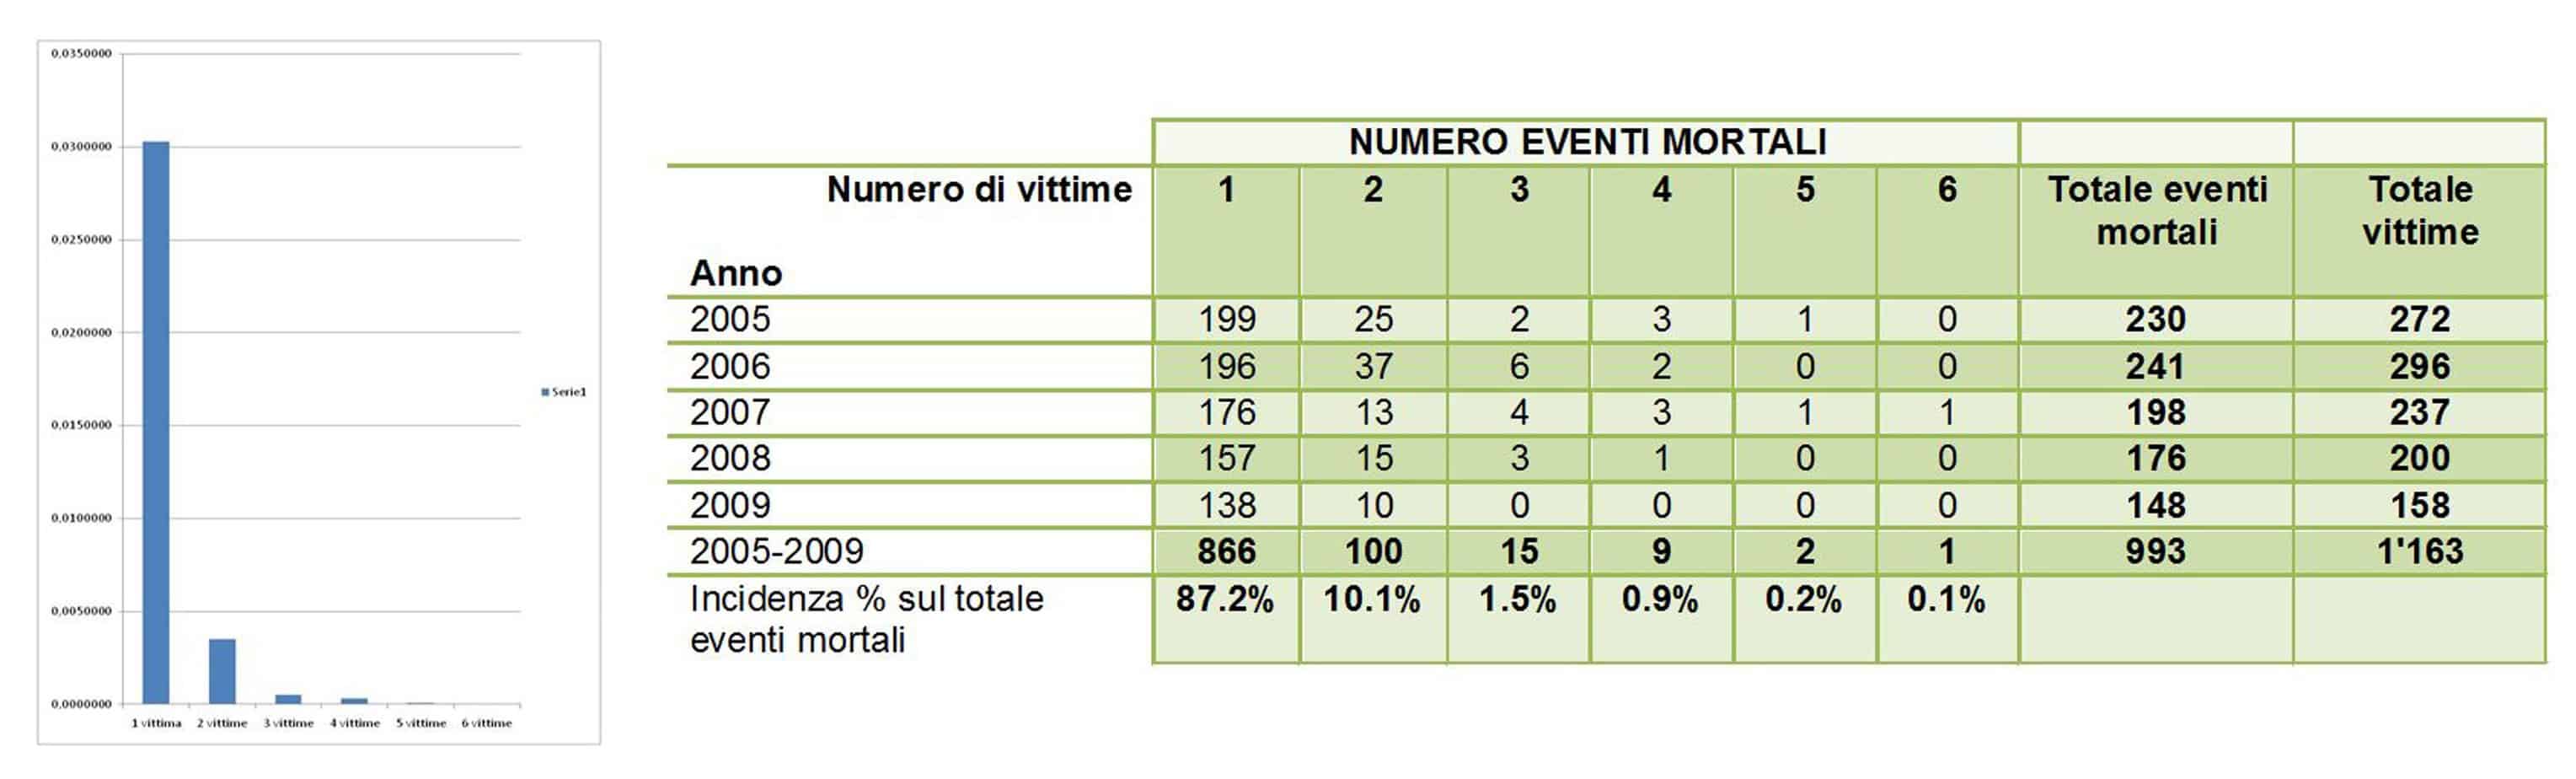 Il probabile numero di vittime registrato sulla rete autostradale italiana